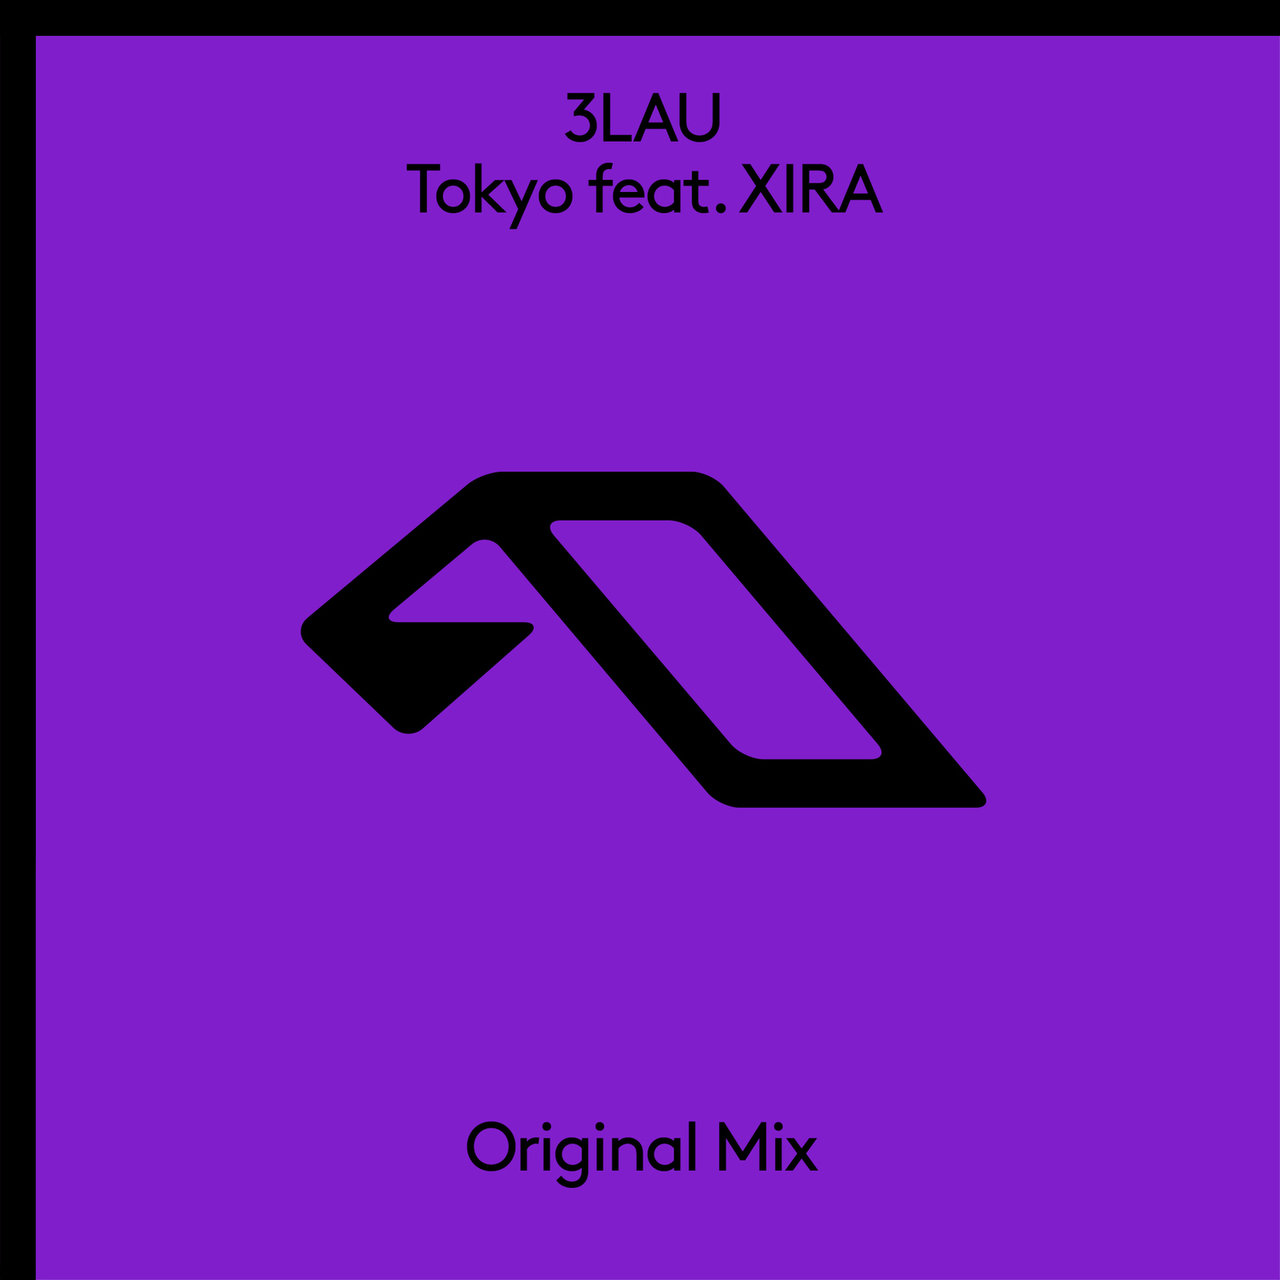 3LAU featuring XIRA — Tokyo cover artwork